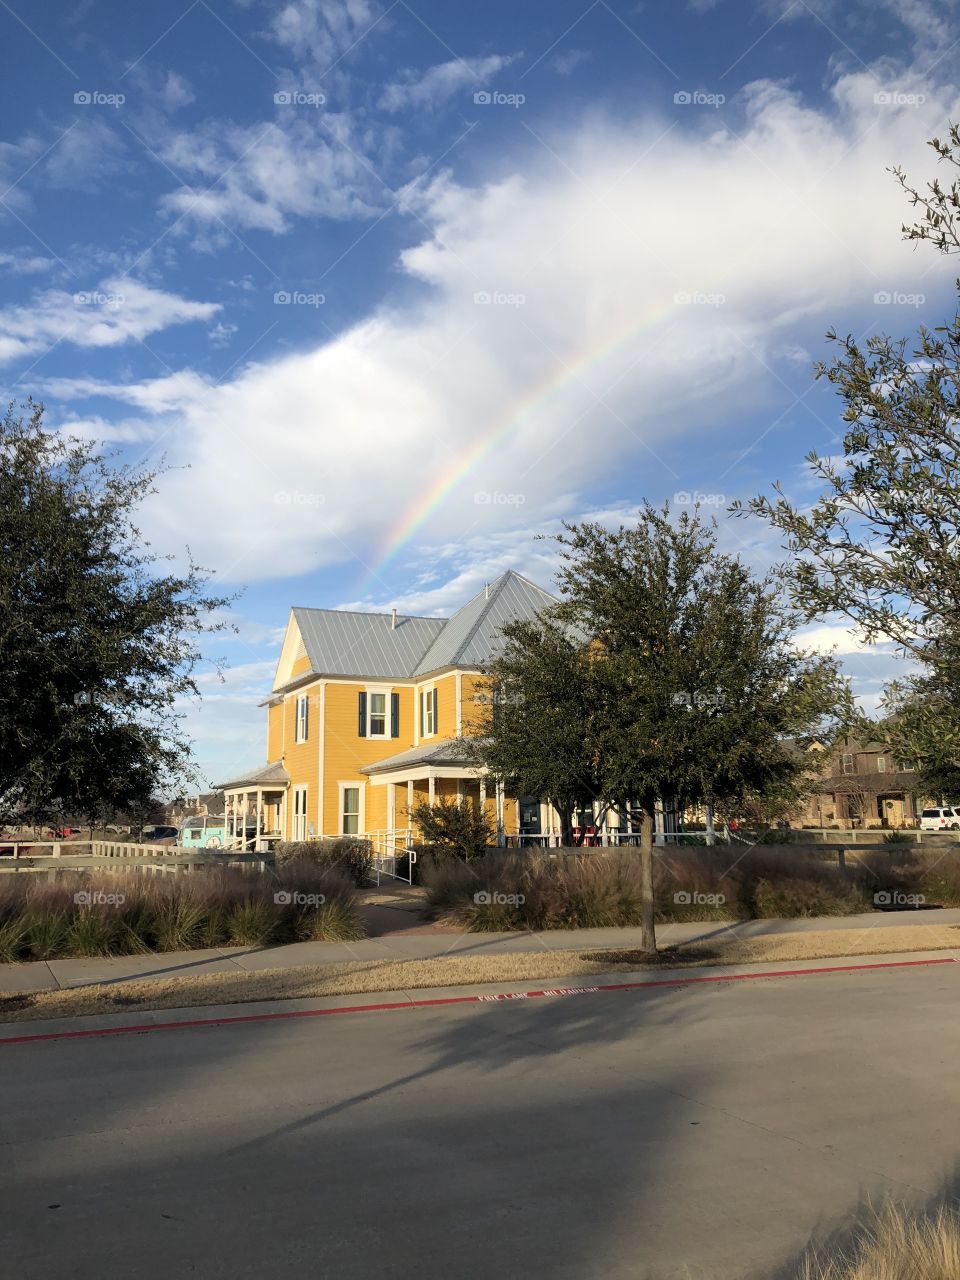 Rainbow over Farmhouse Coffee shop